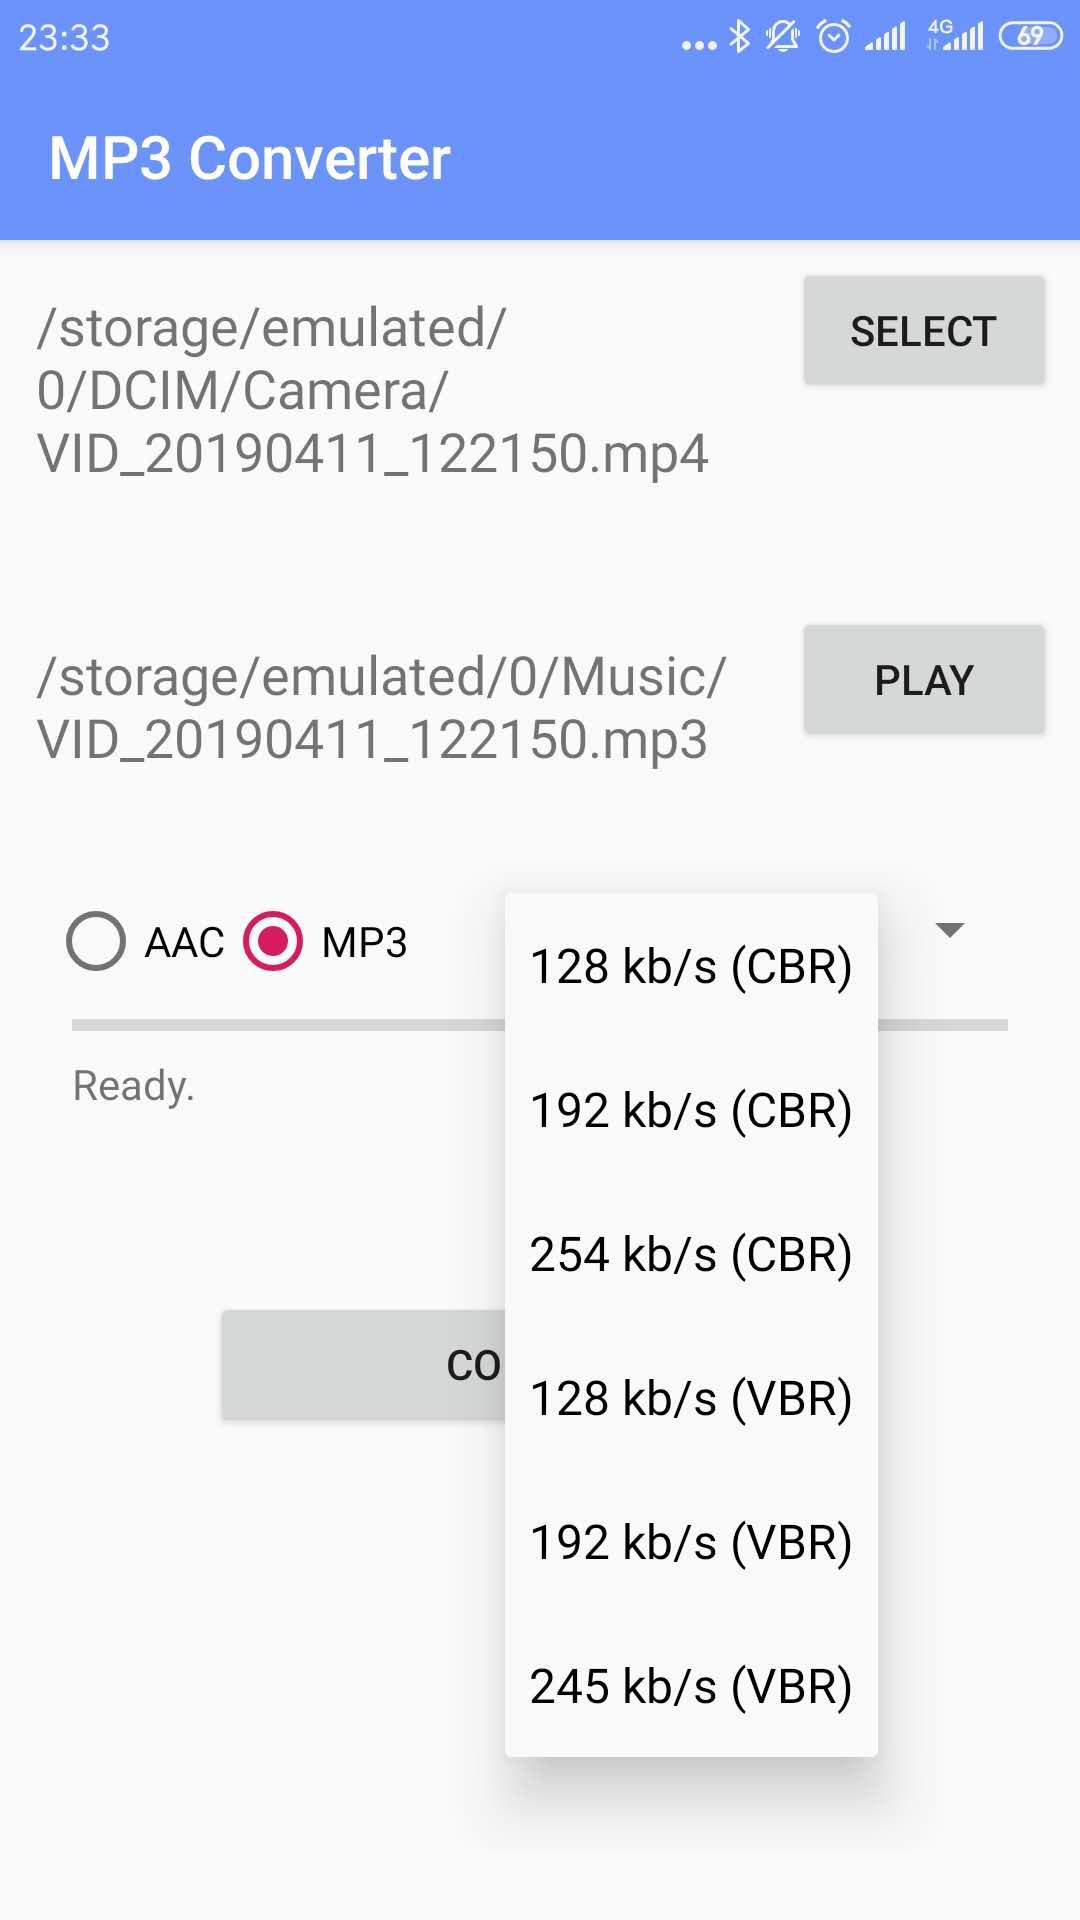 MP3 Video Converter (mp4\mkv\3gp\flv) for Android - APK Download